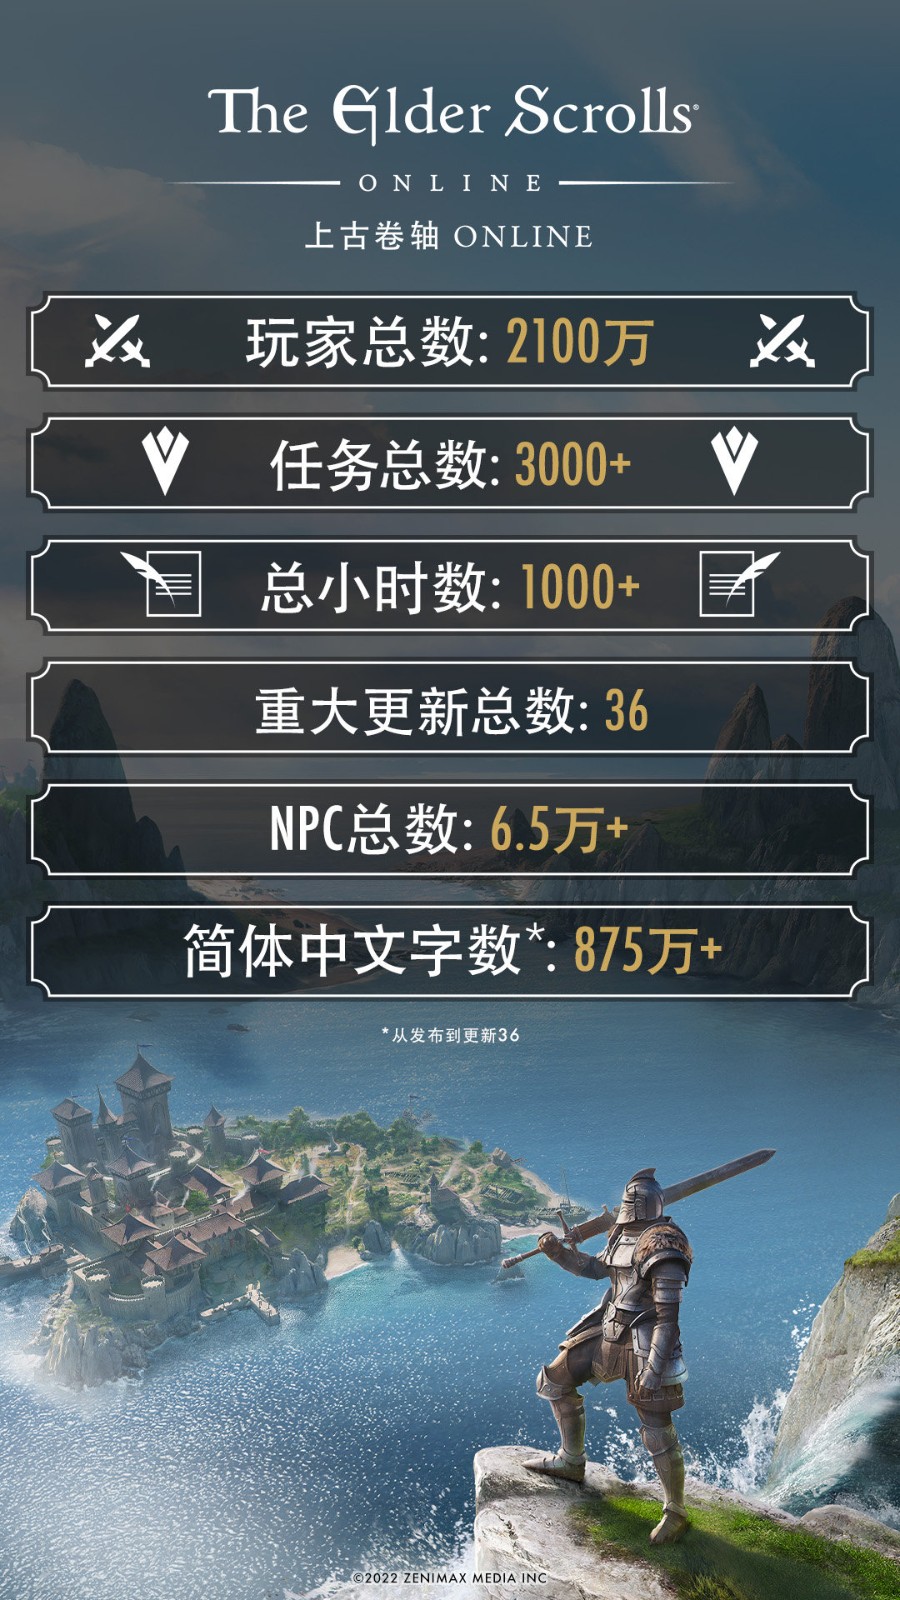 《上古卷轴OL》现已加入简体中文 可加入2100万玩家行列 二次世界 第4张